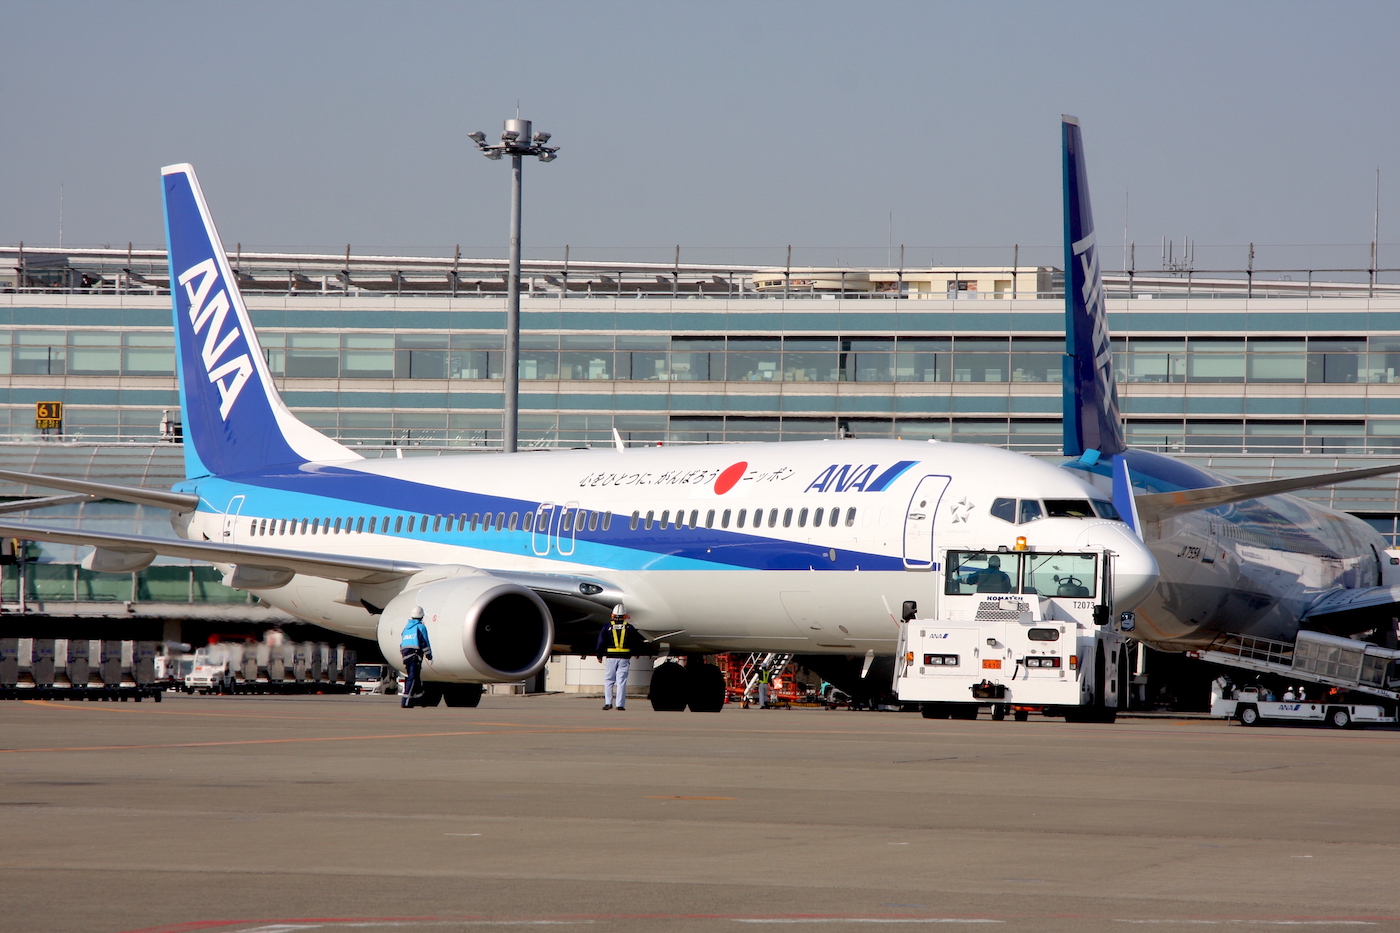 東日本大震災から仙台空港が再起した3月16日 ー2011年の記録からー | AIRLINE web -月刊エアライン×航空旅行-